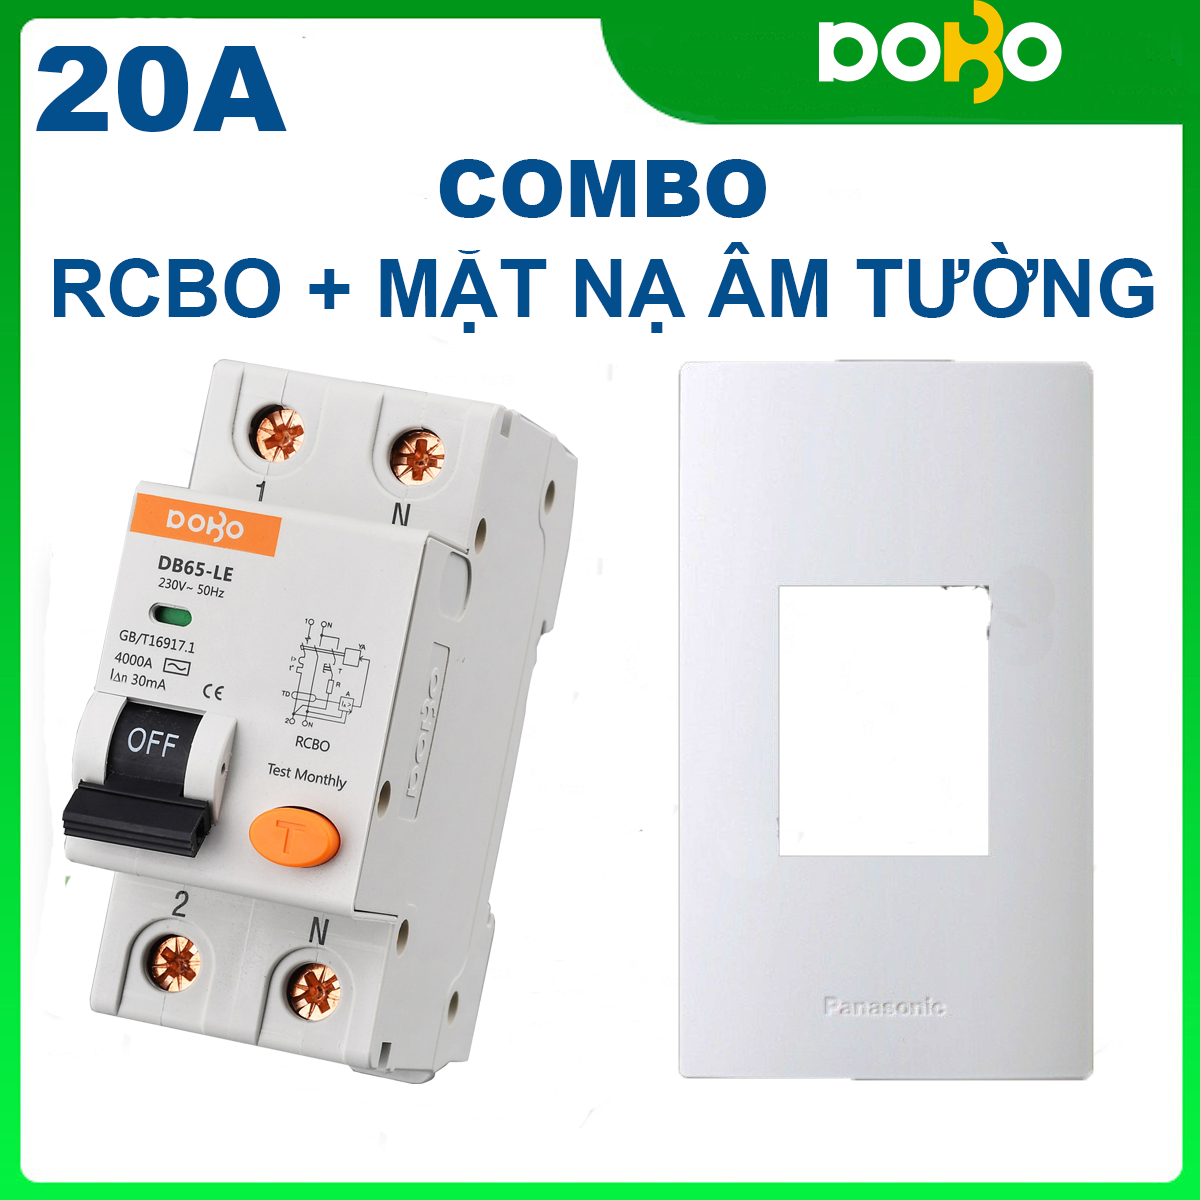 Cầu Dao Chống Giật RCBO DOBO 2P 20A - 30mA đa năng - siêu nhạy - Aptomat chống giật có clip test giật điện trực tiếp - Hàng Tốt - Sản phẩm được Khách Hàng tin dùng 5 năm liền!